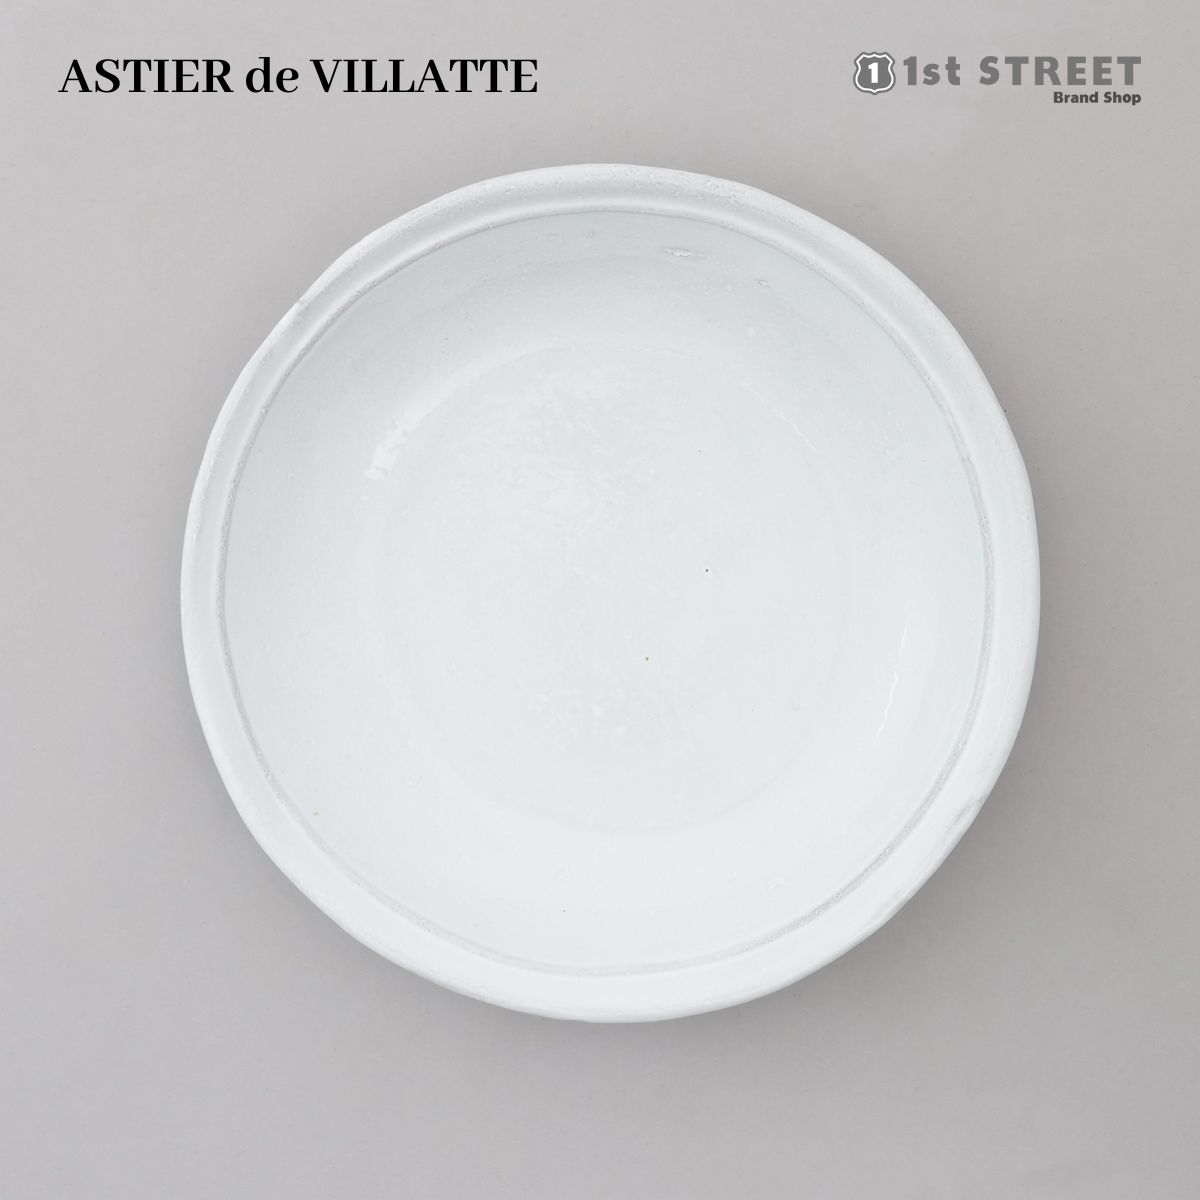 アスティエ・ド・ヴィラット ASTIER de VILLATTE プレート サイズ スープ 皿 ボウル 食器 洋食器 陶器 おしゃれ ギフト ASCSMP3 SIMPLE